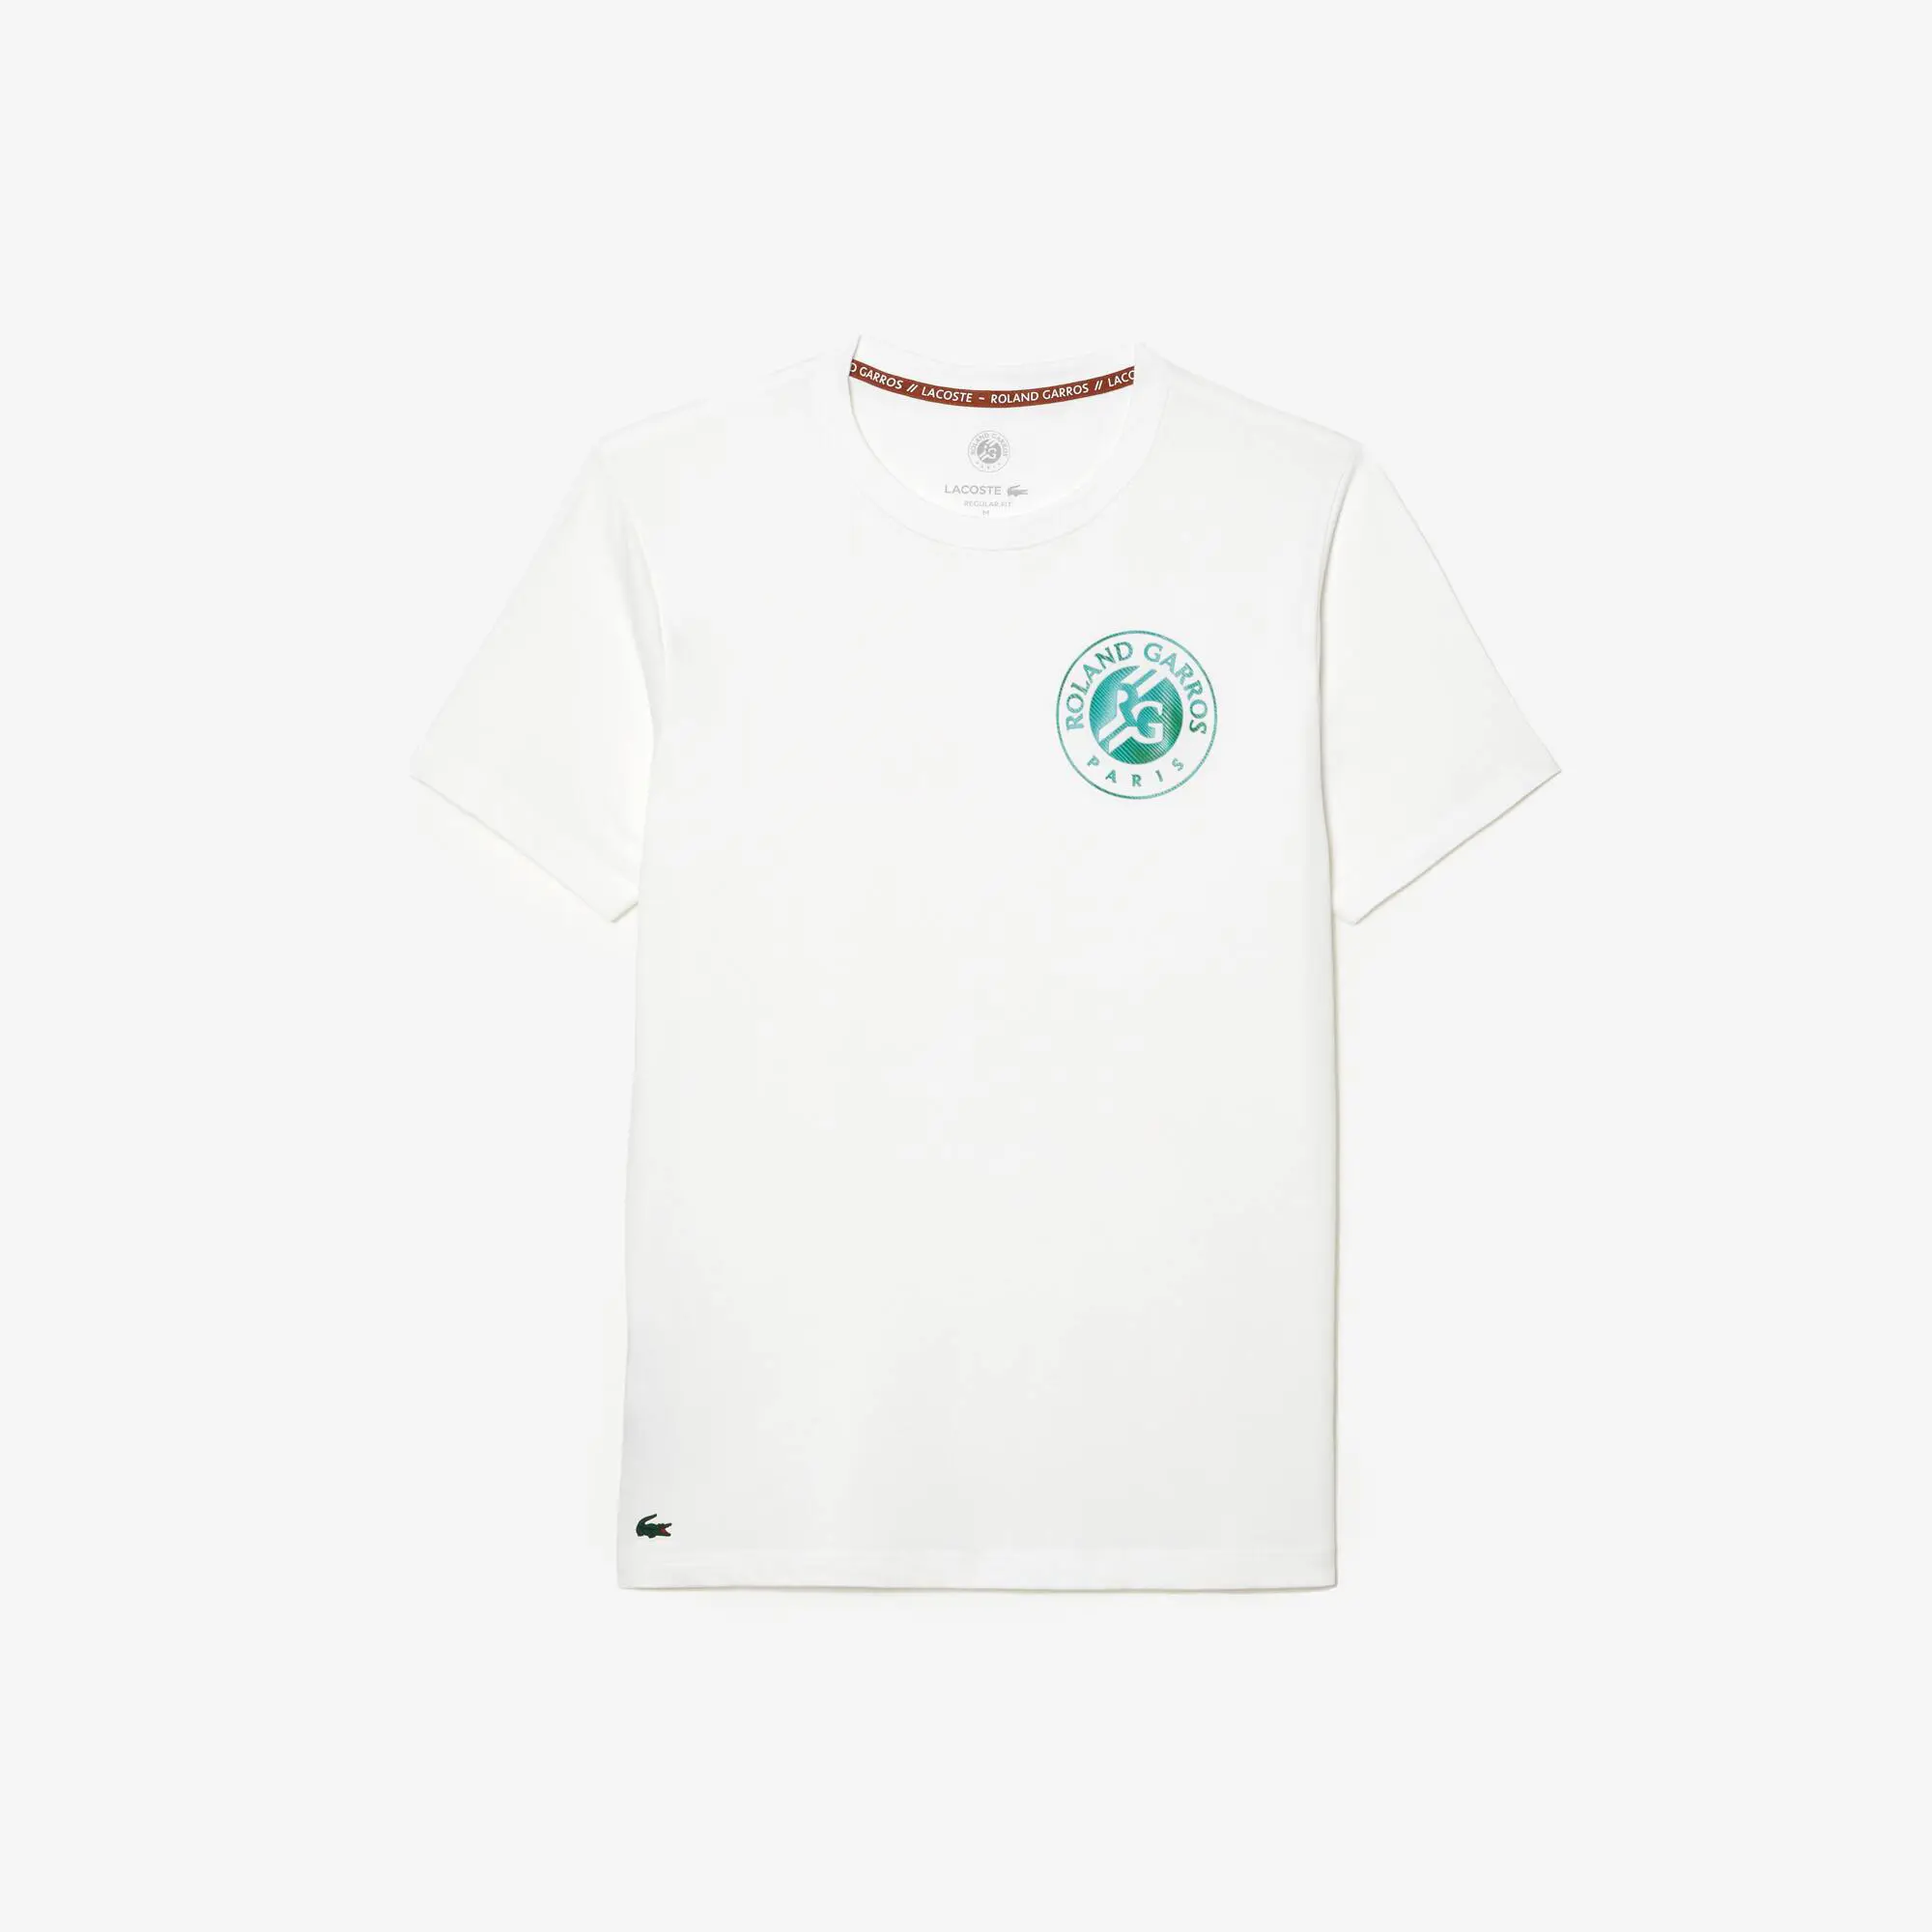 Lacoste Men’s Lacoste Sport Roland Garros Edition Logo T-Shirt. 2